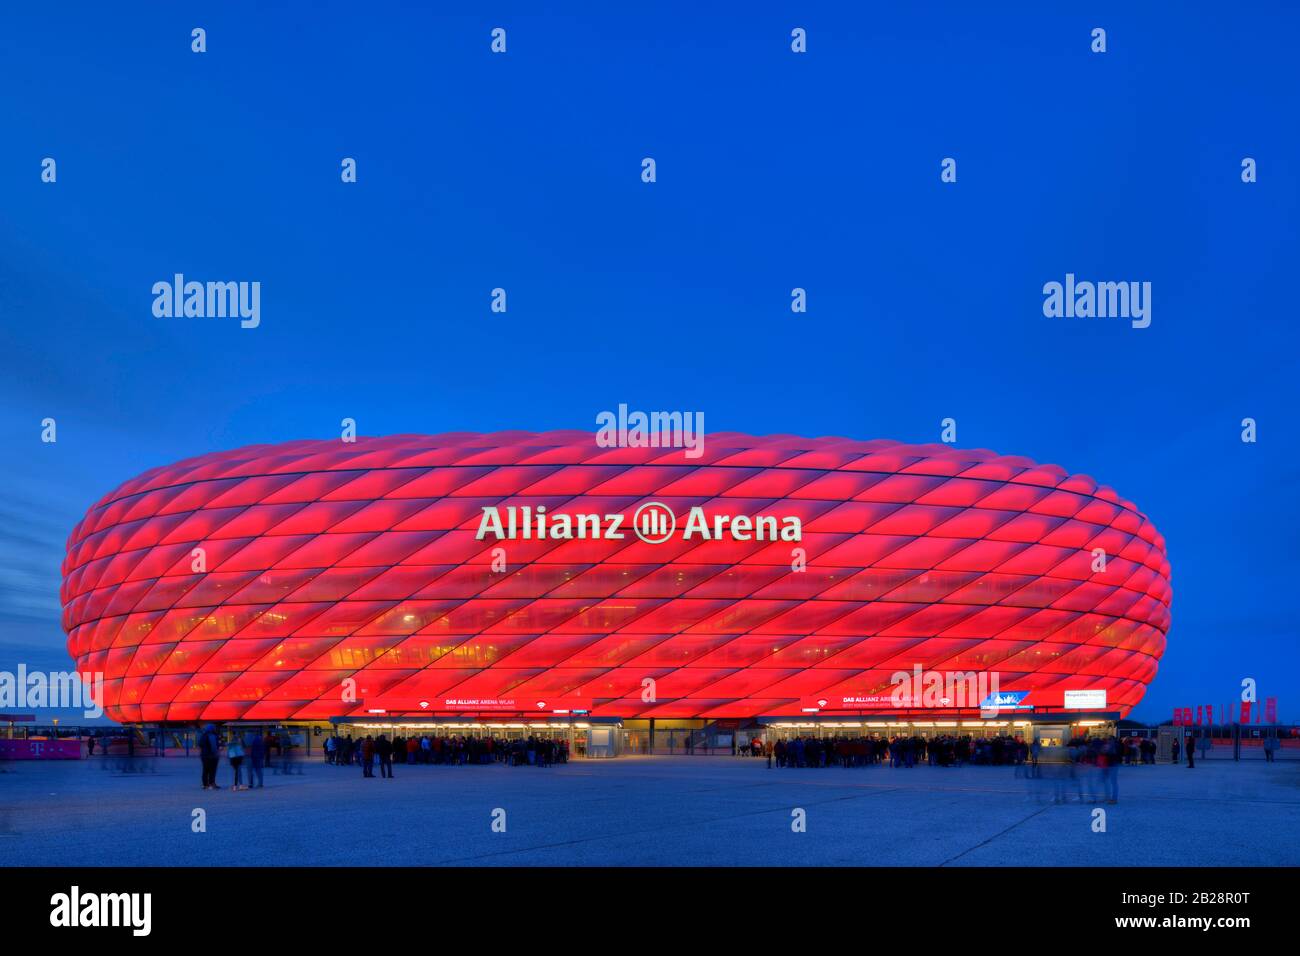 Spectateurs en attente d'entrée, Allianz Arena illuminé à l'heure bleue, Munich, Bavière, Allemagne Banque D'Images